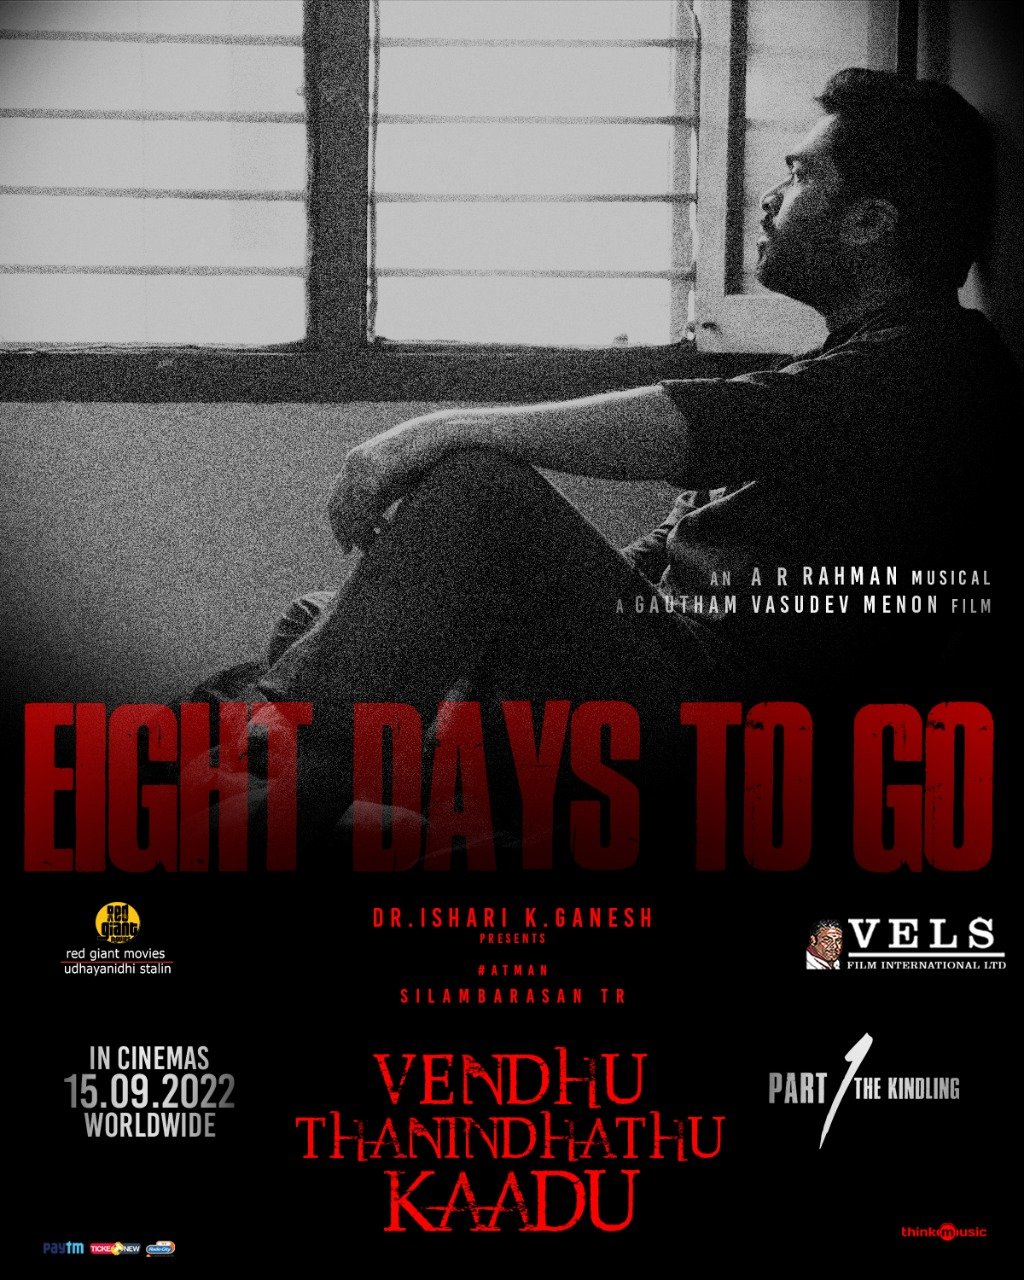 Silambarasan TR Venthu Thaninthathu Kaadu Movie New Countdown Poster